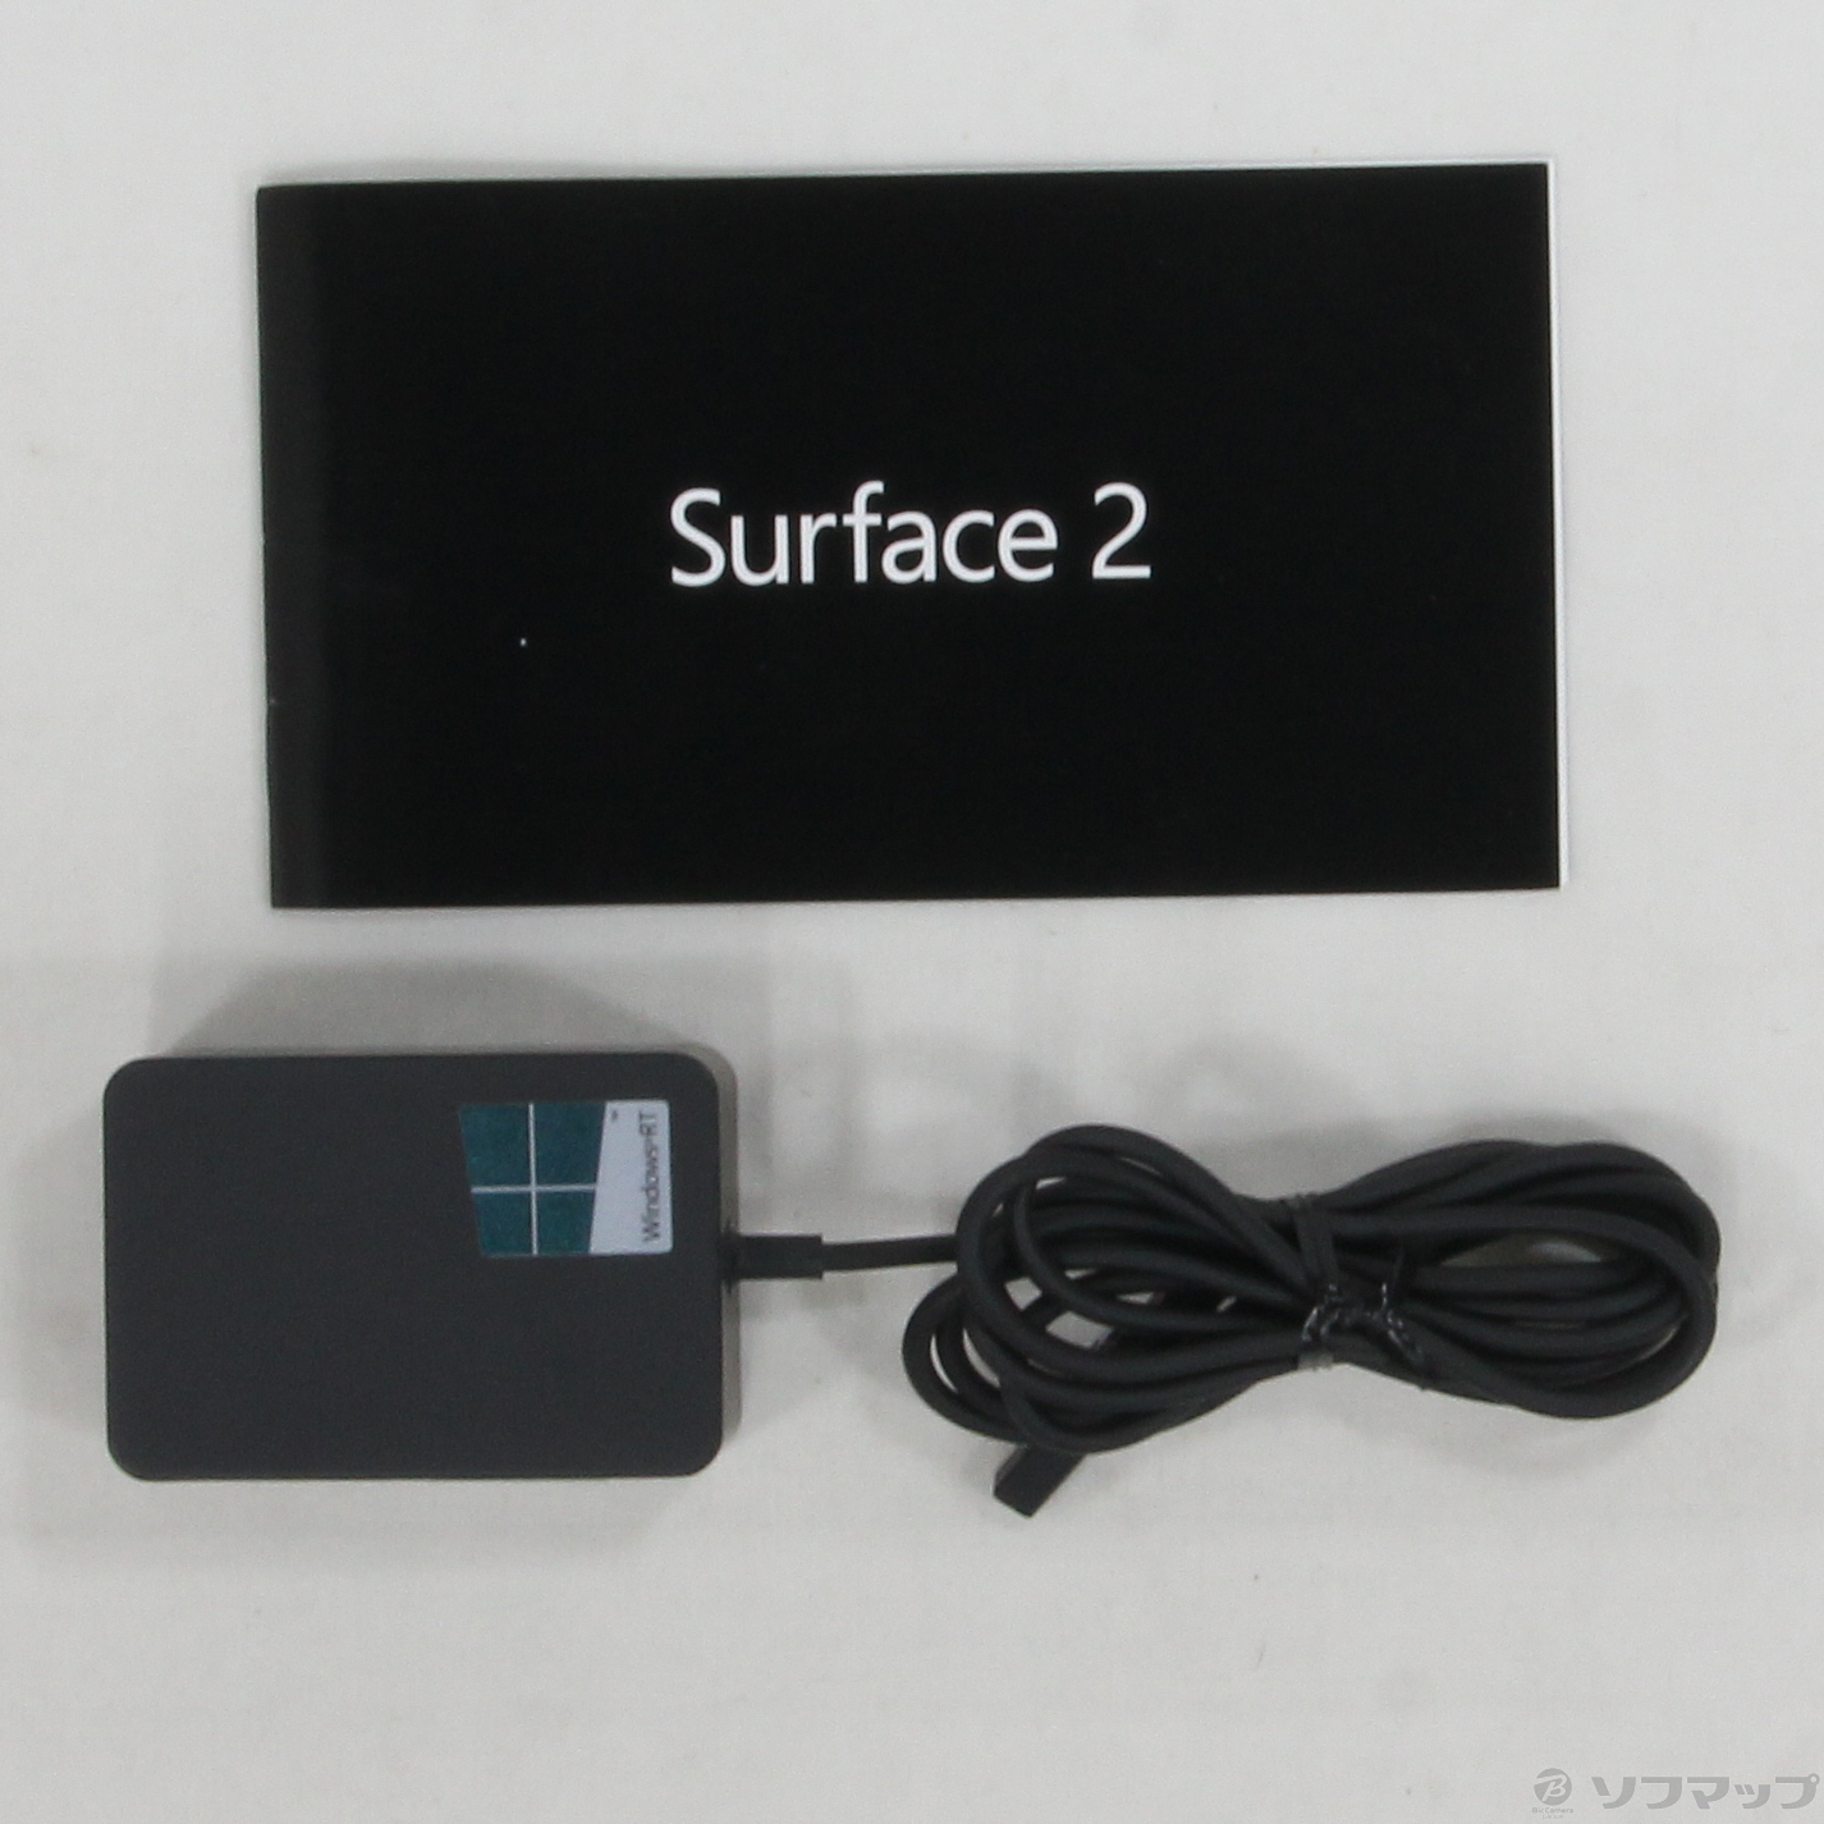 surface2 (WindowsRT) 32G